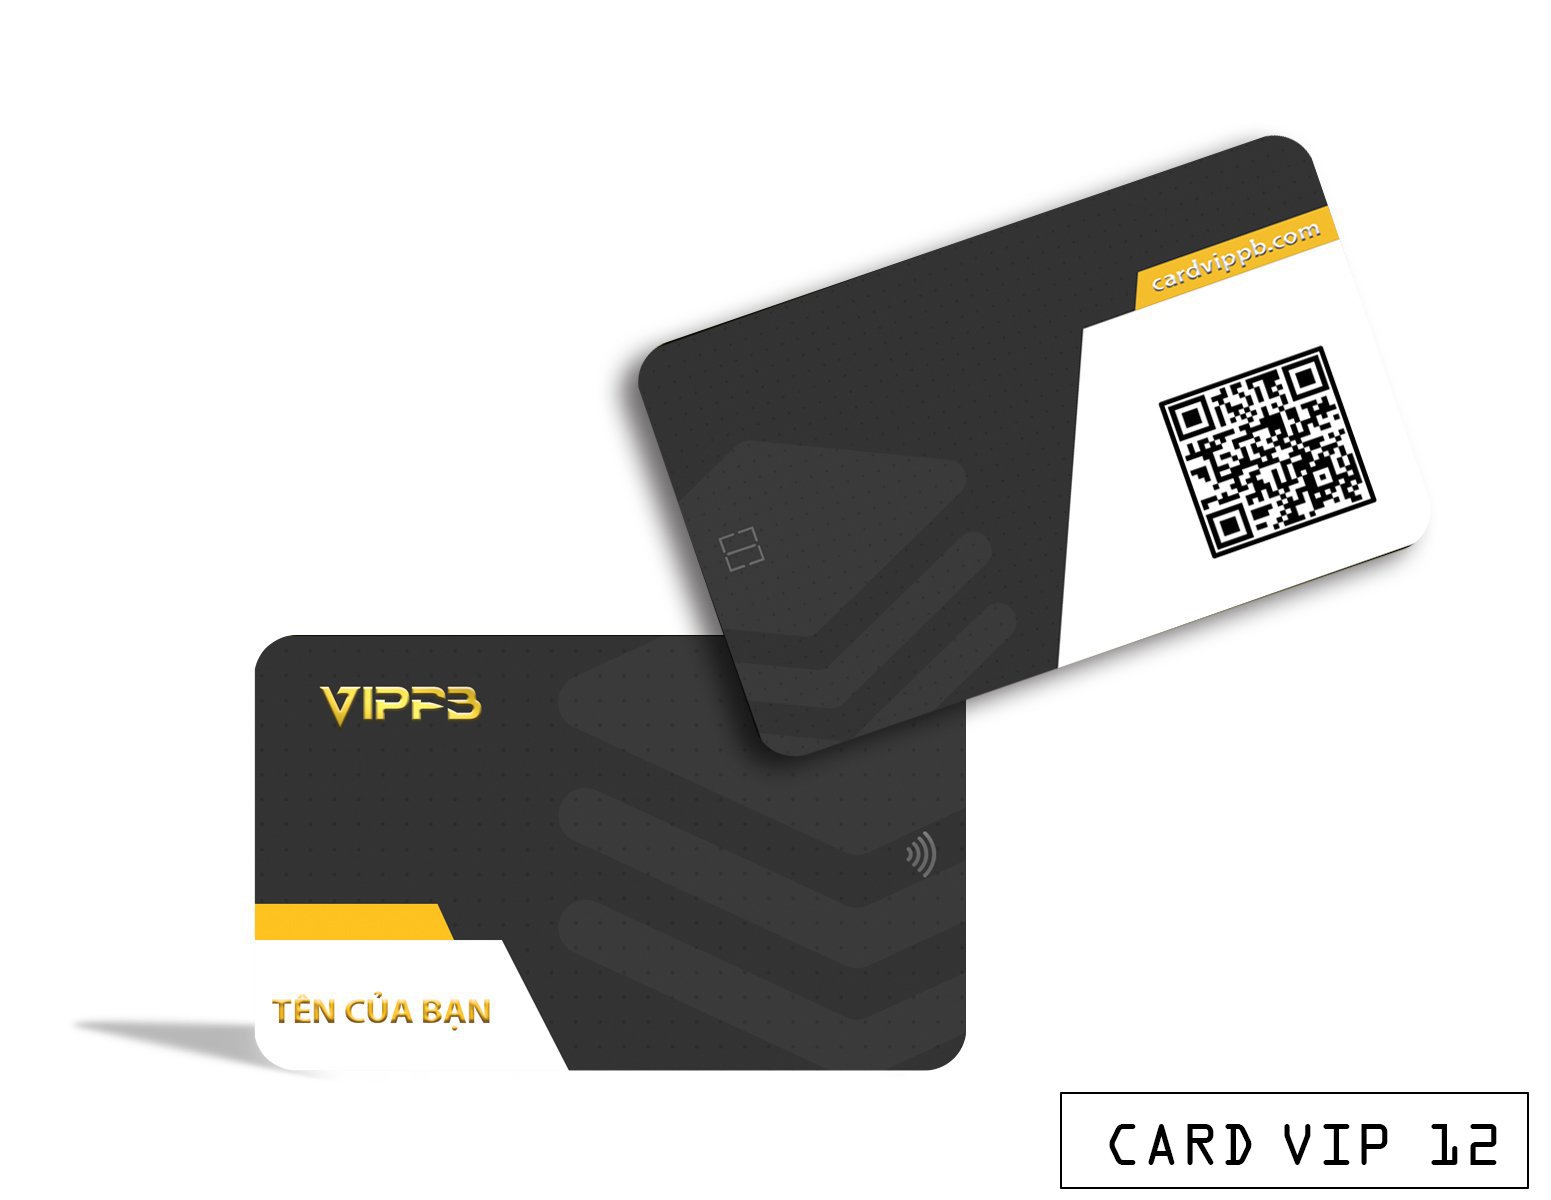 CARD VIPPB